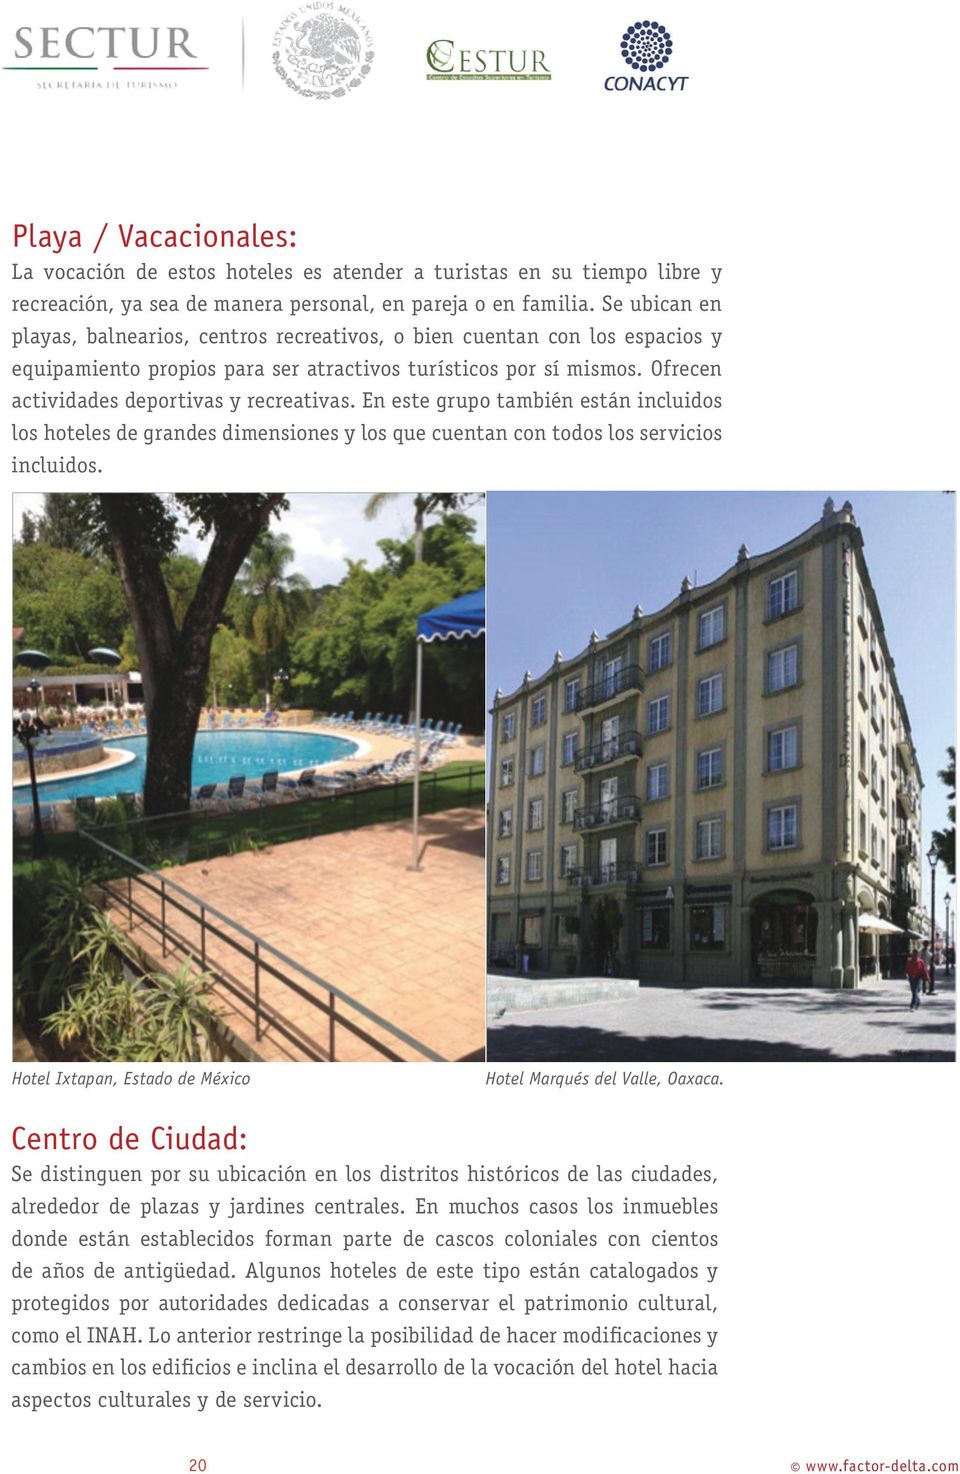 En este grupo también están incluidos los hoteles de grandes dimensiones y los que cuentan con todos los servicios incluidos. Hotel Ixtapan, Estado de México Hotel Marqués del Valle, Oaxaca.